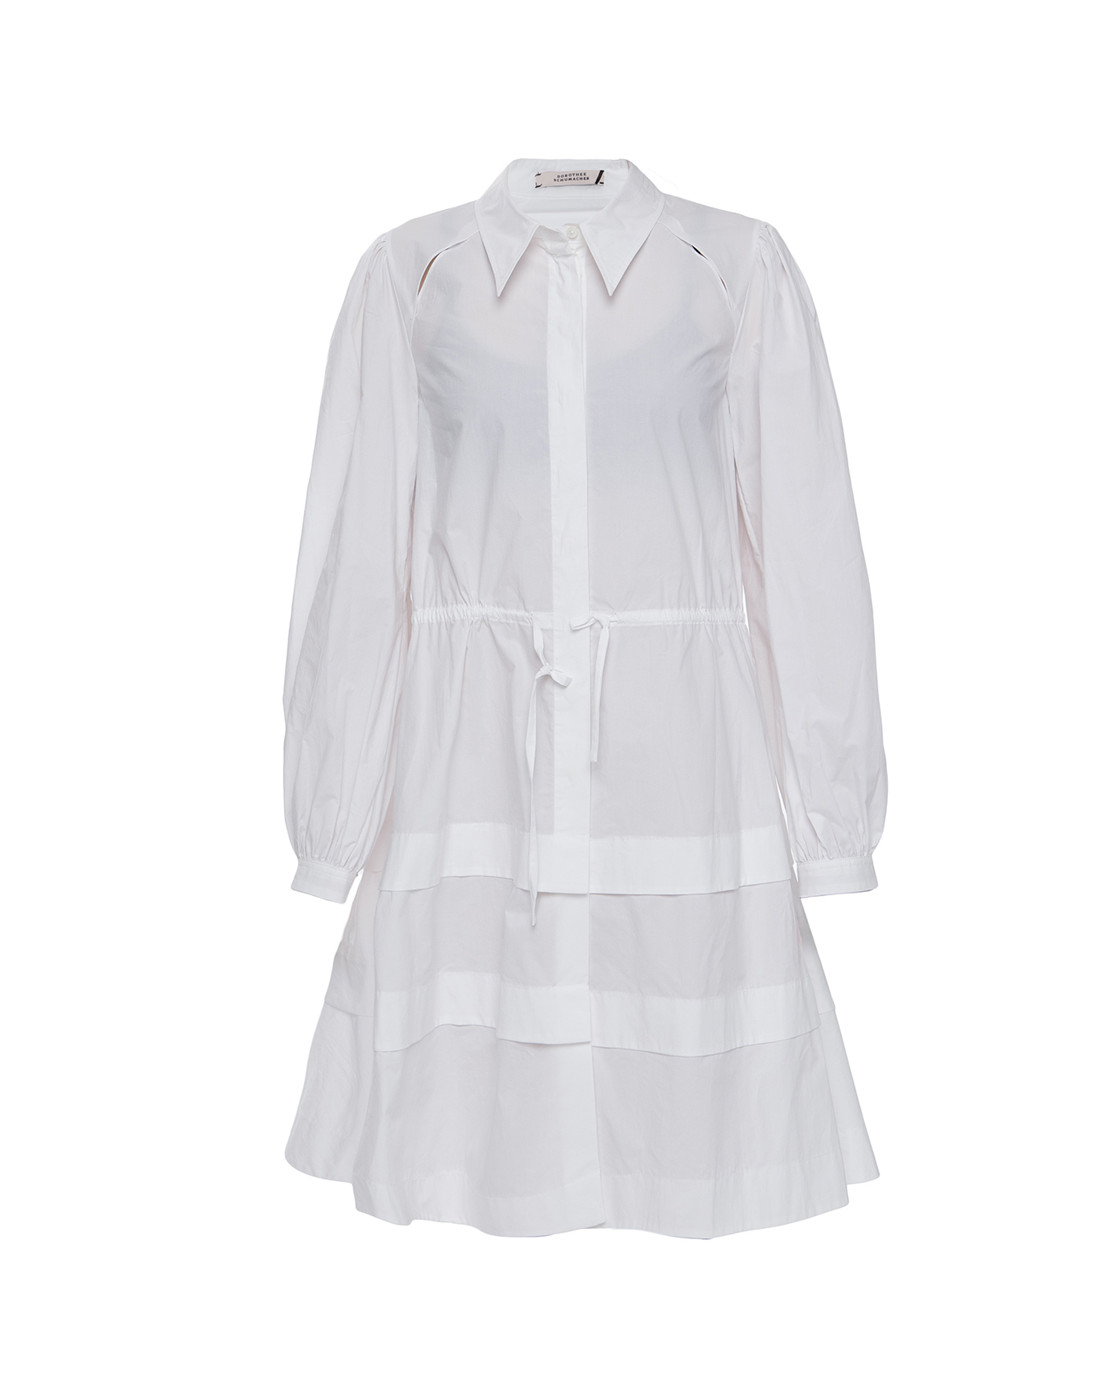 Платье белое женское Dorothee Schumacher S146254/100-1